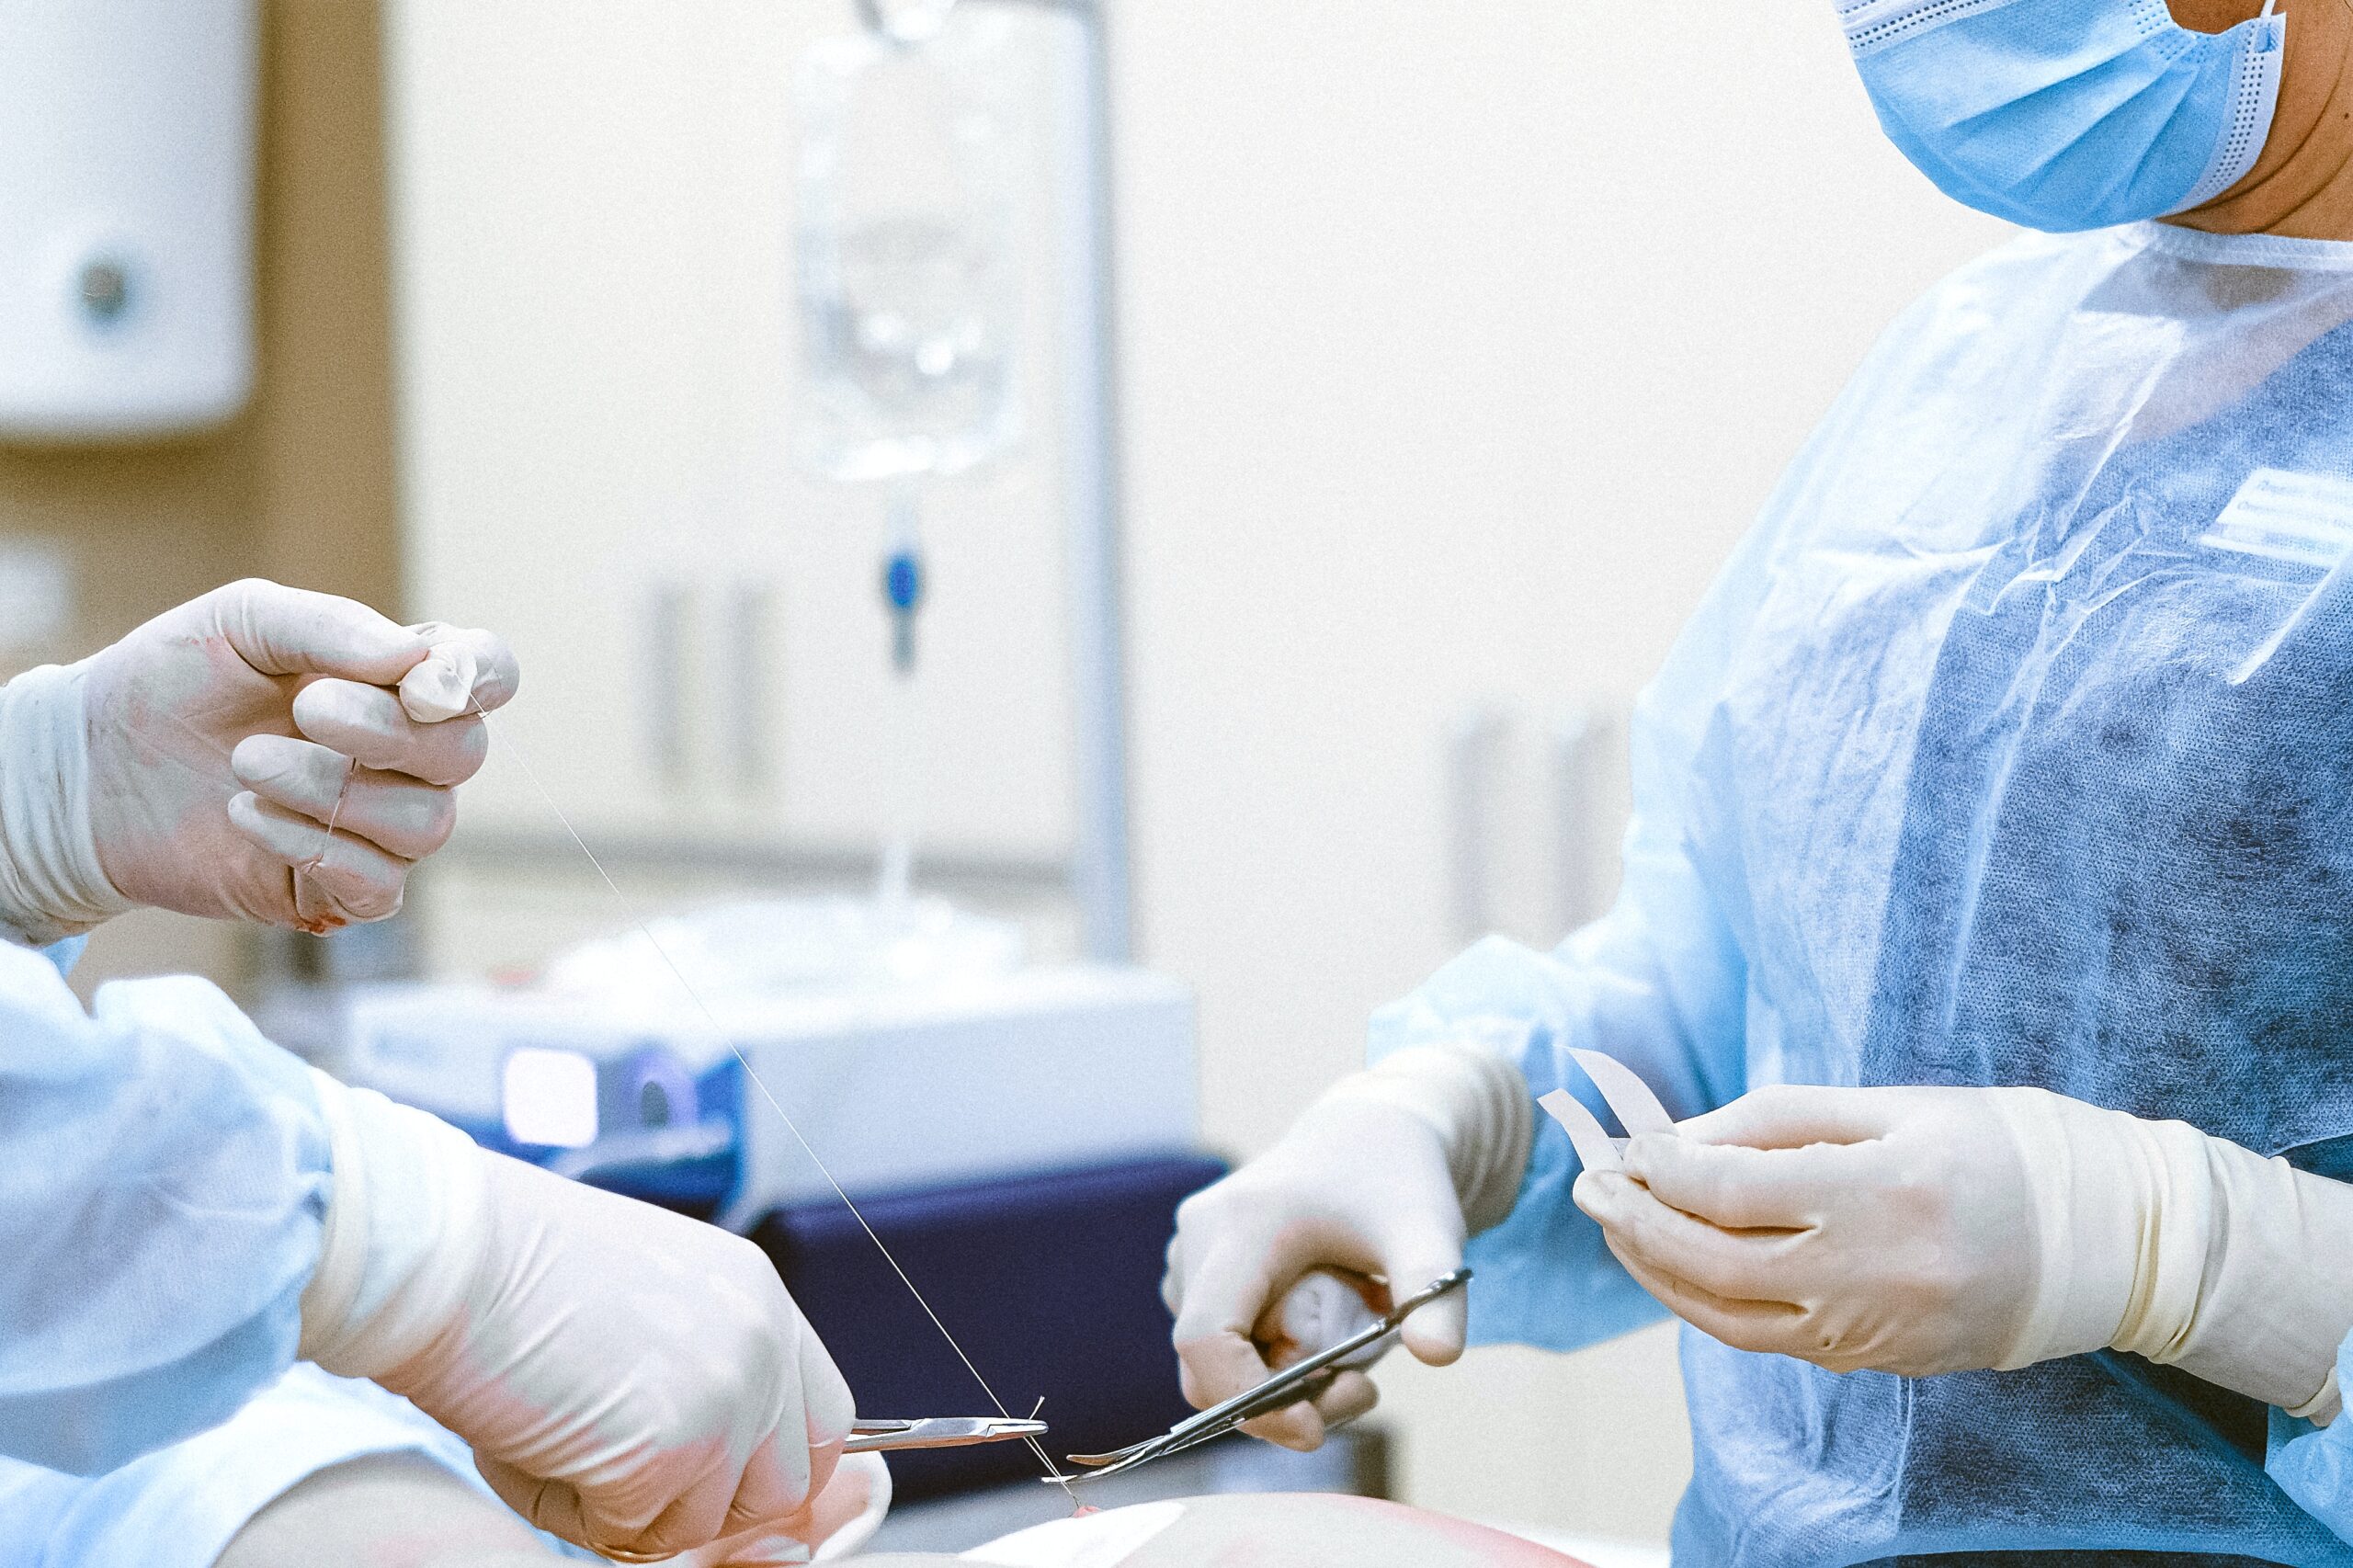 Gallbladder Surgery Injuries